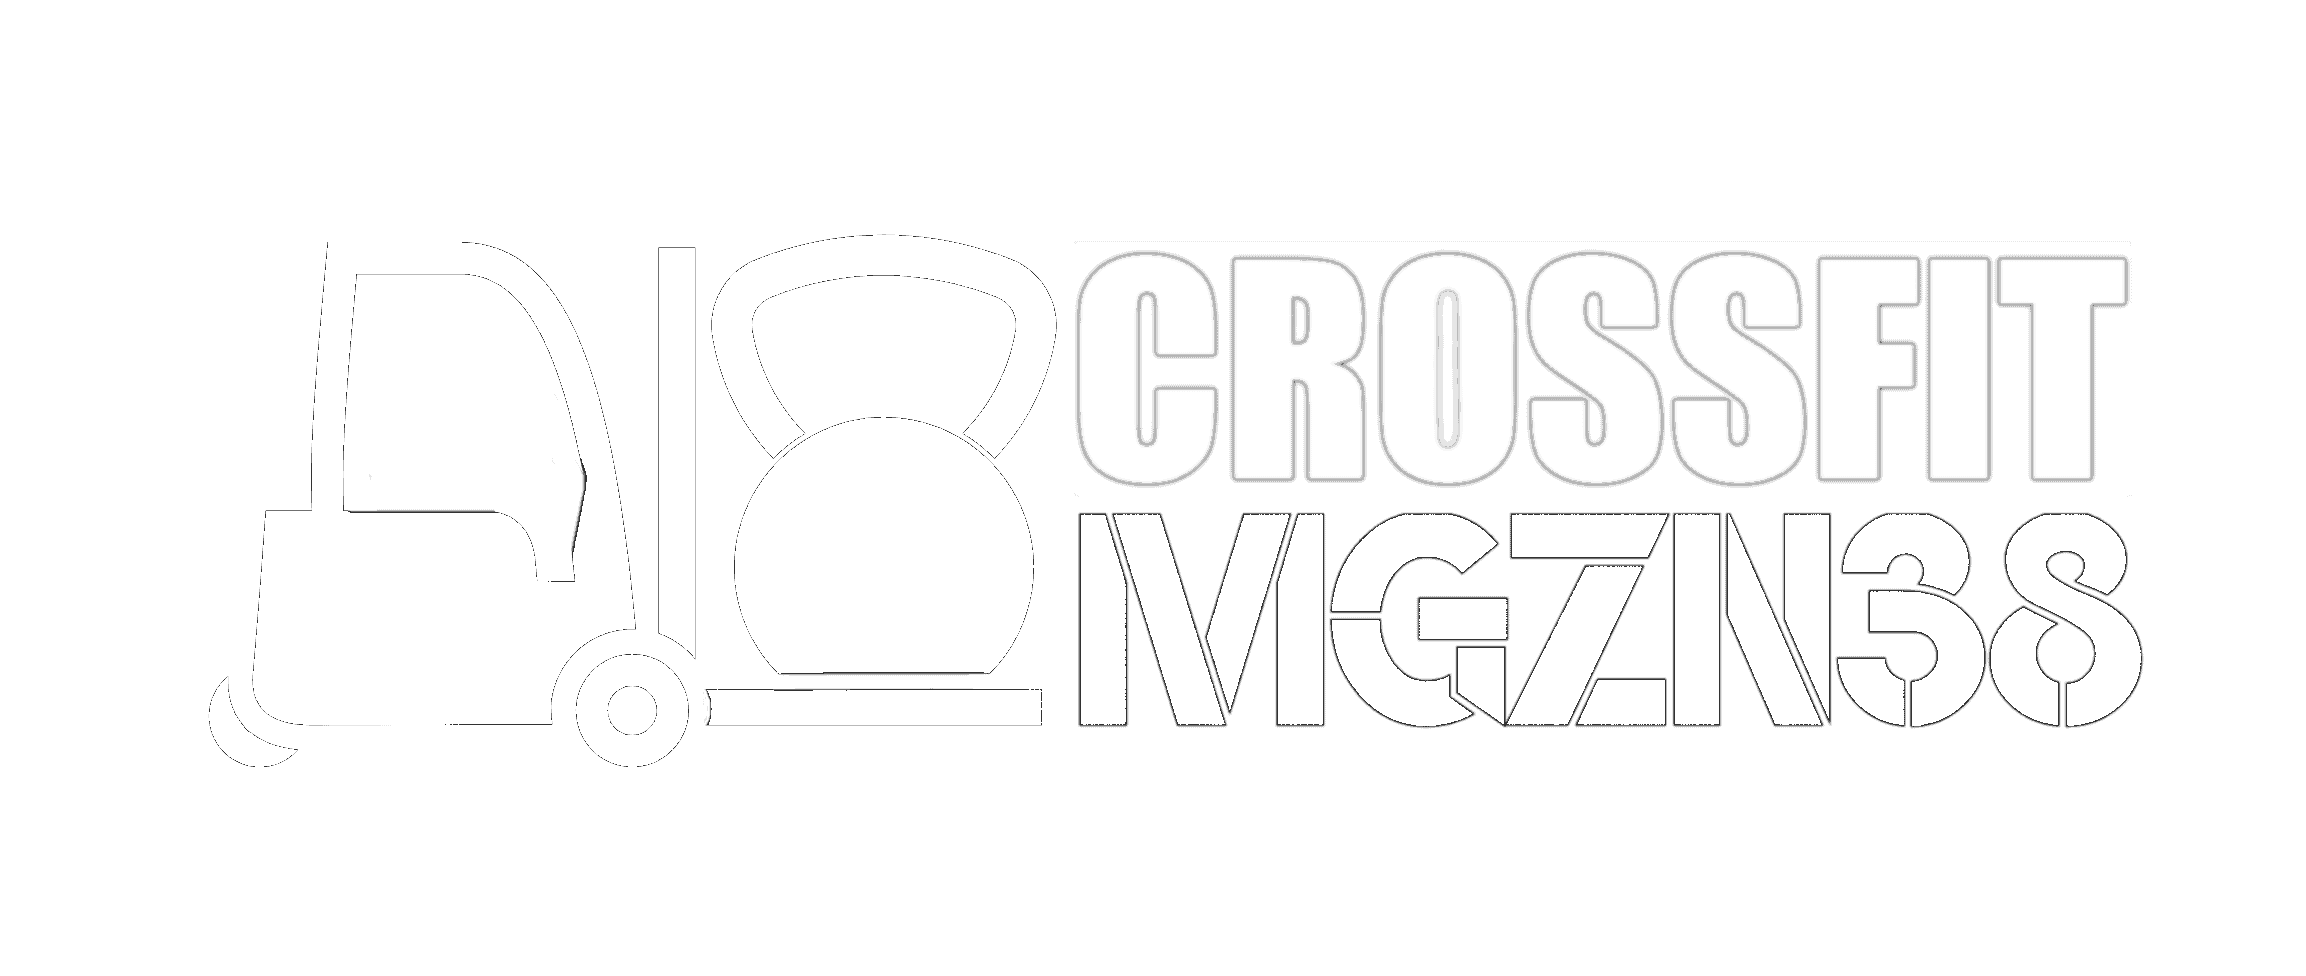 crossfit magazyn38